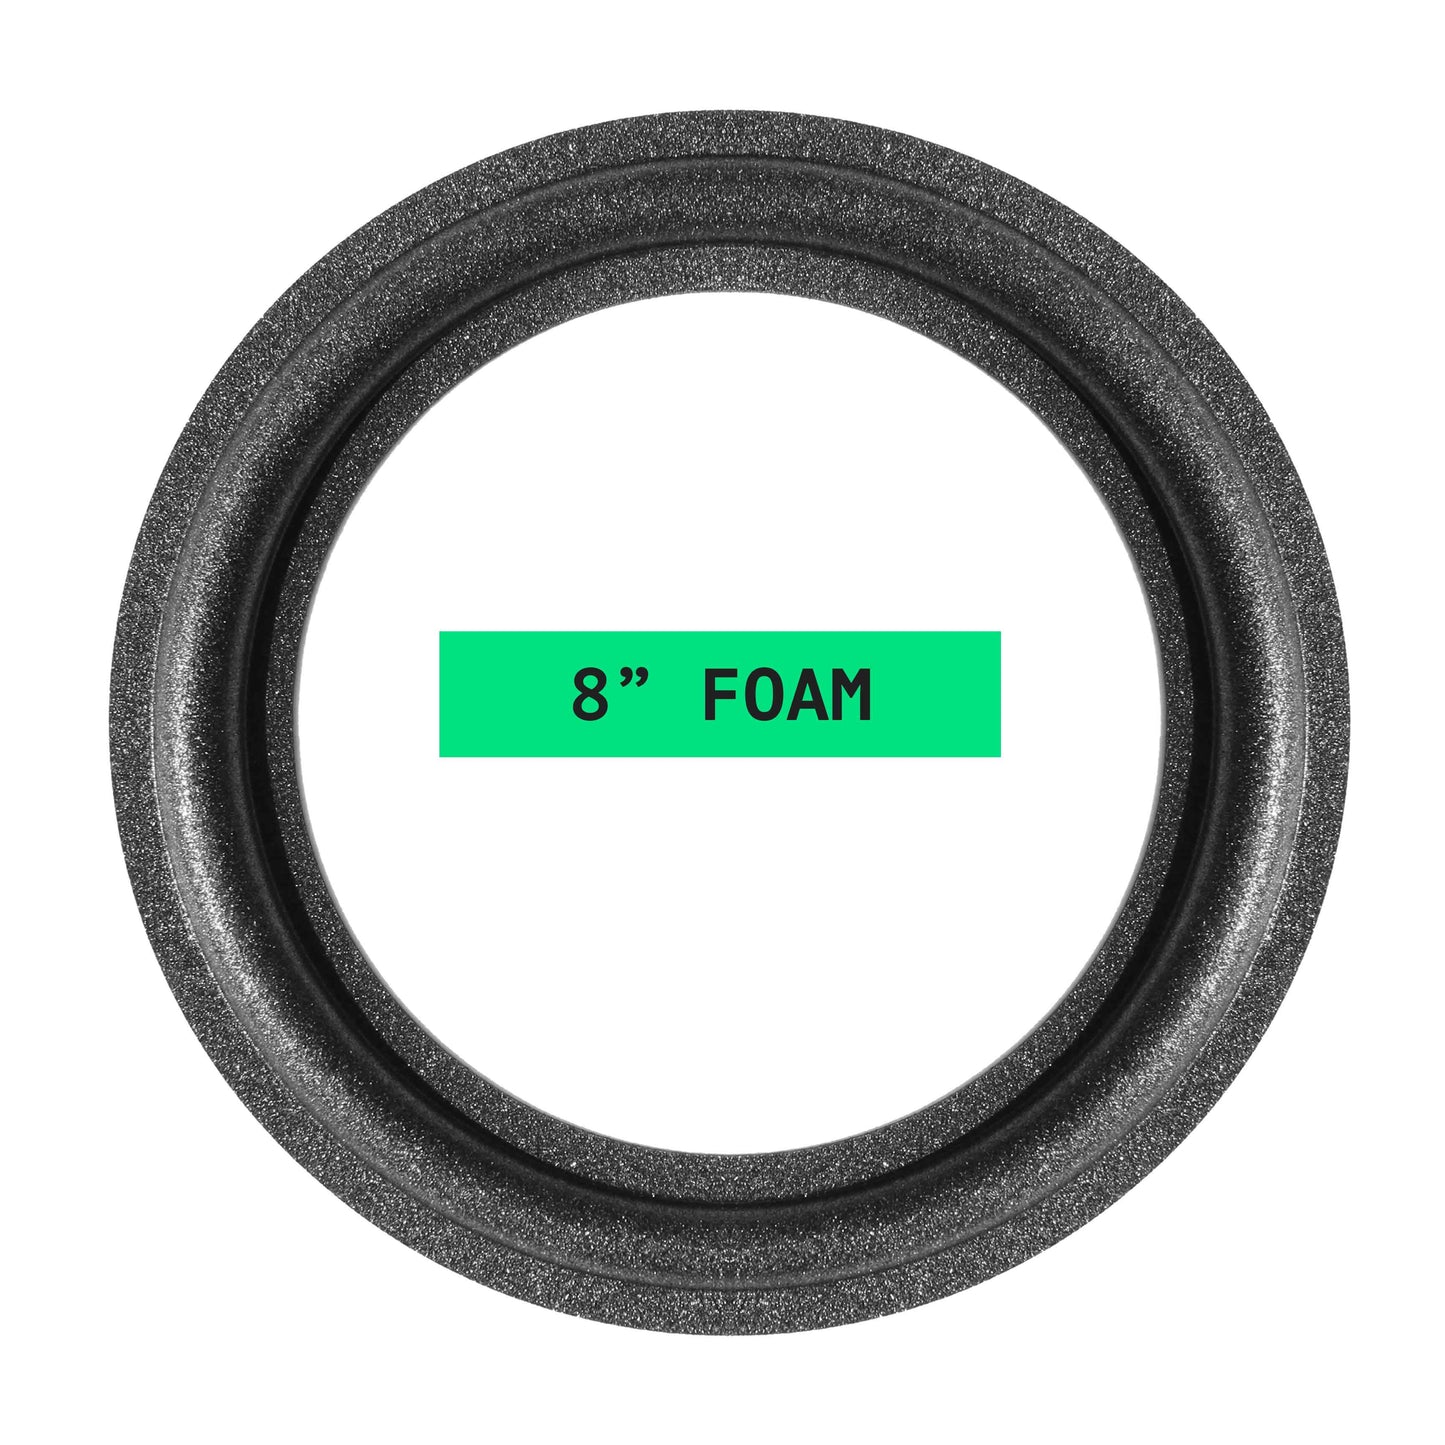 Bose 8" Foam Repair Kit